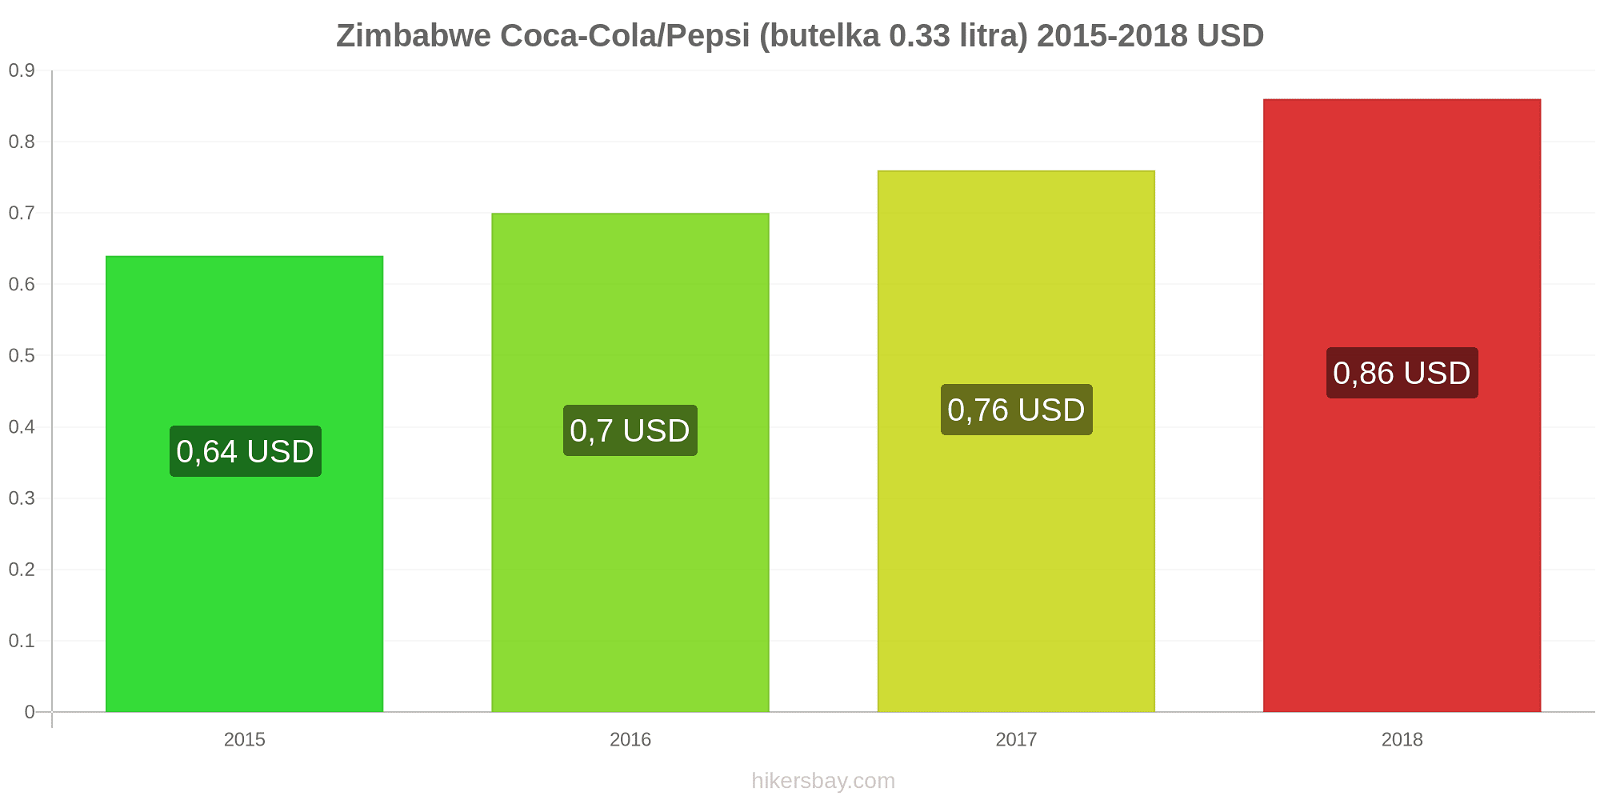 Zimbabwe zmiany cen Coca-Cola/Pepsi (butelka 0.33 litra) hikersbay.com